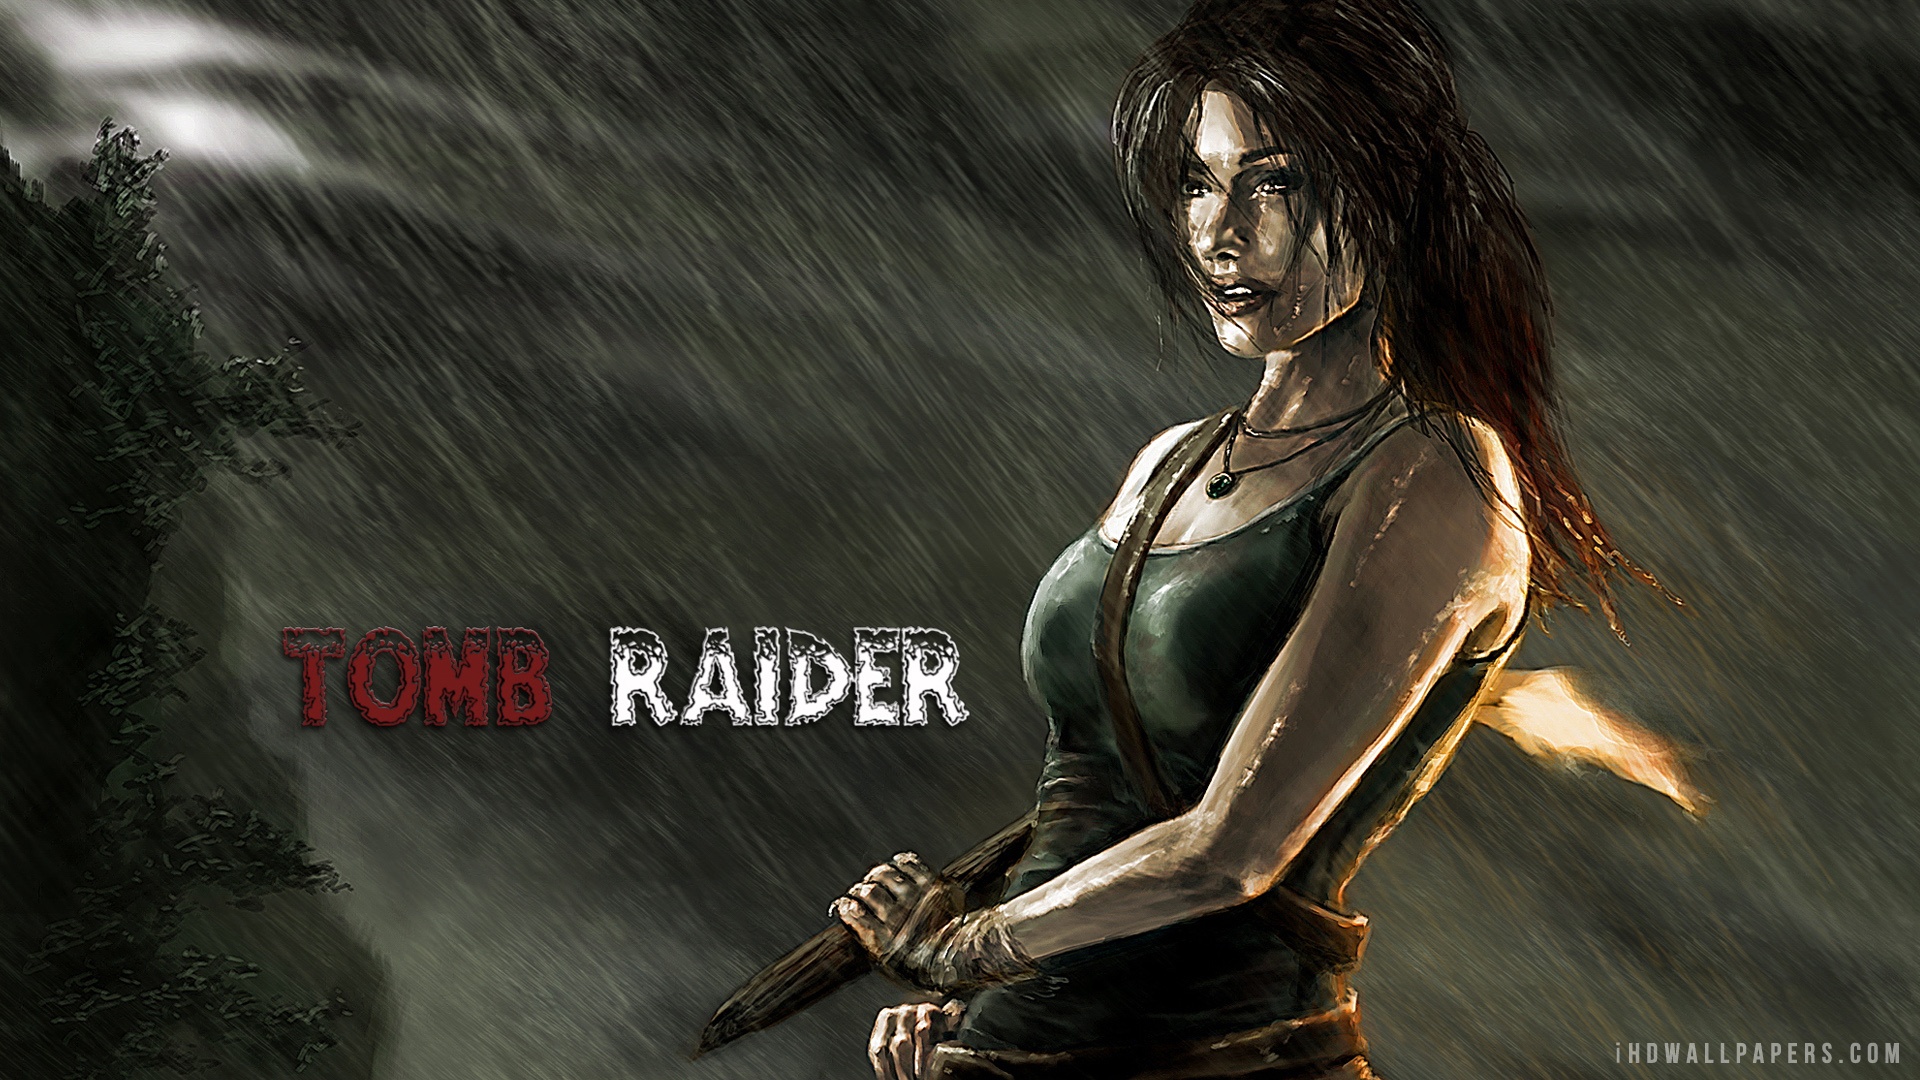 2012 Tomb Raider HD Wallpaper   iHD Wallpapers